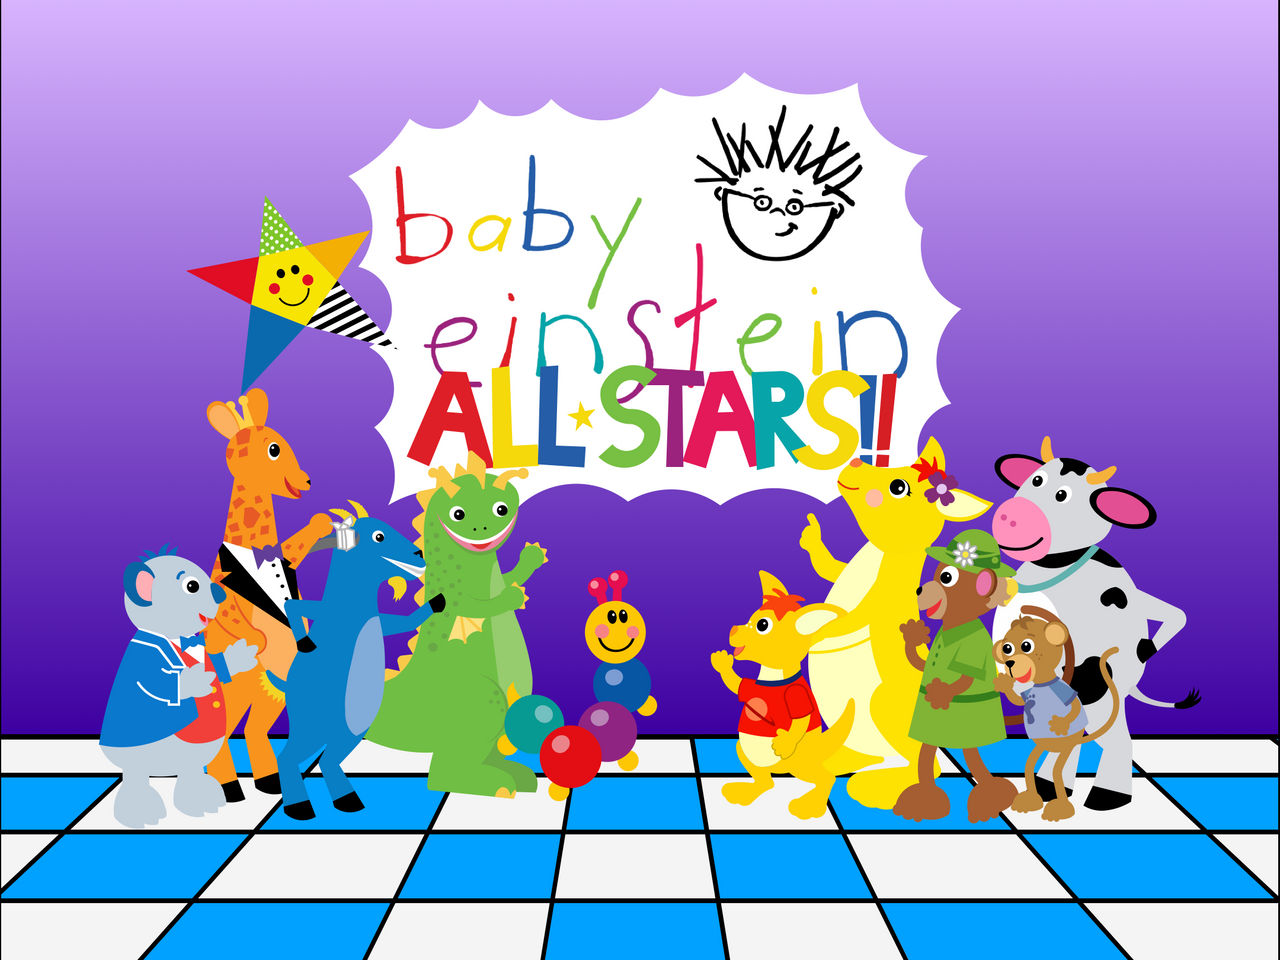 Baby Einstein ALL STARS!! (4:3) by Mozart8889 on DeviantArt